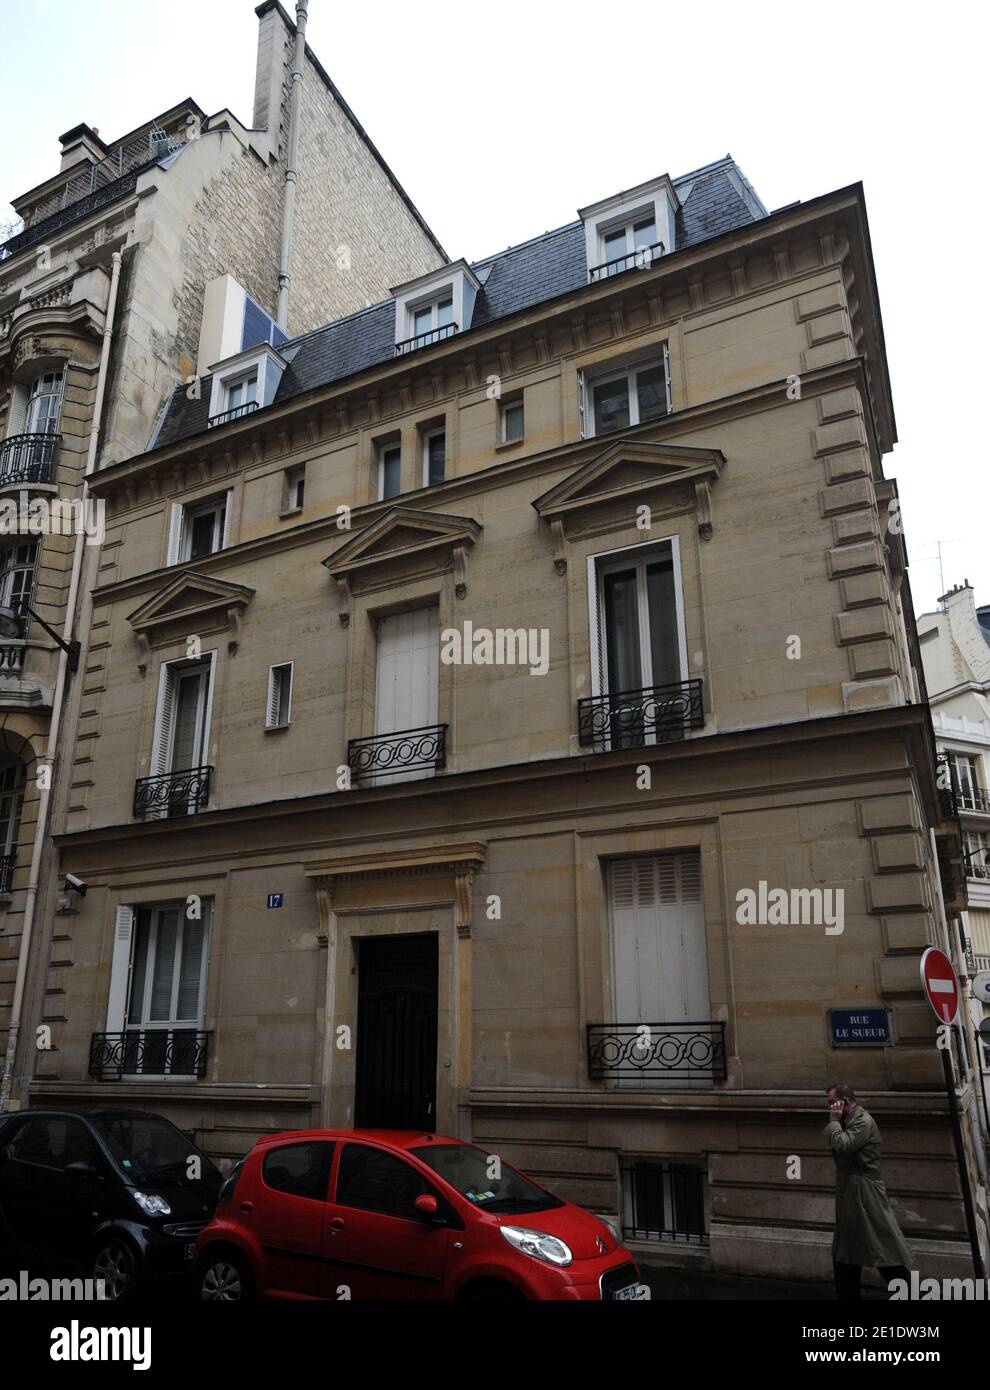 L'Hôtel particulier parisien de la fille de l'ancien président tunisien Ben  Ali, Nesrine Ben Ali, et de son mari Sakher El Materi, a été placé dans le  16ème arrondissement, entre l'avenue Foch